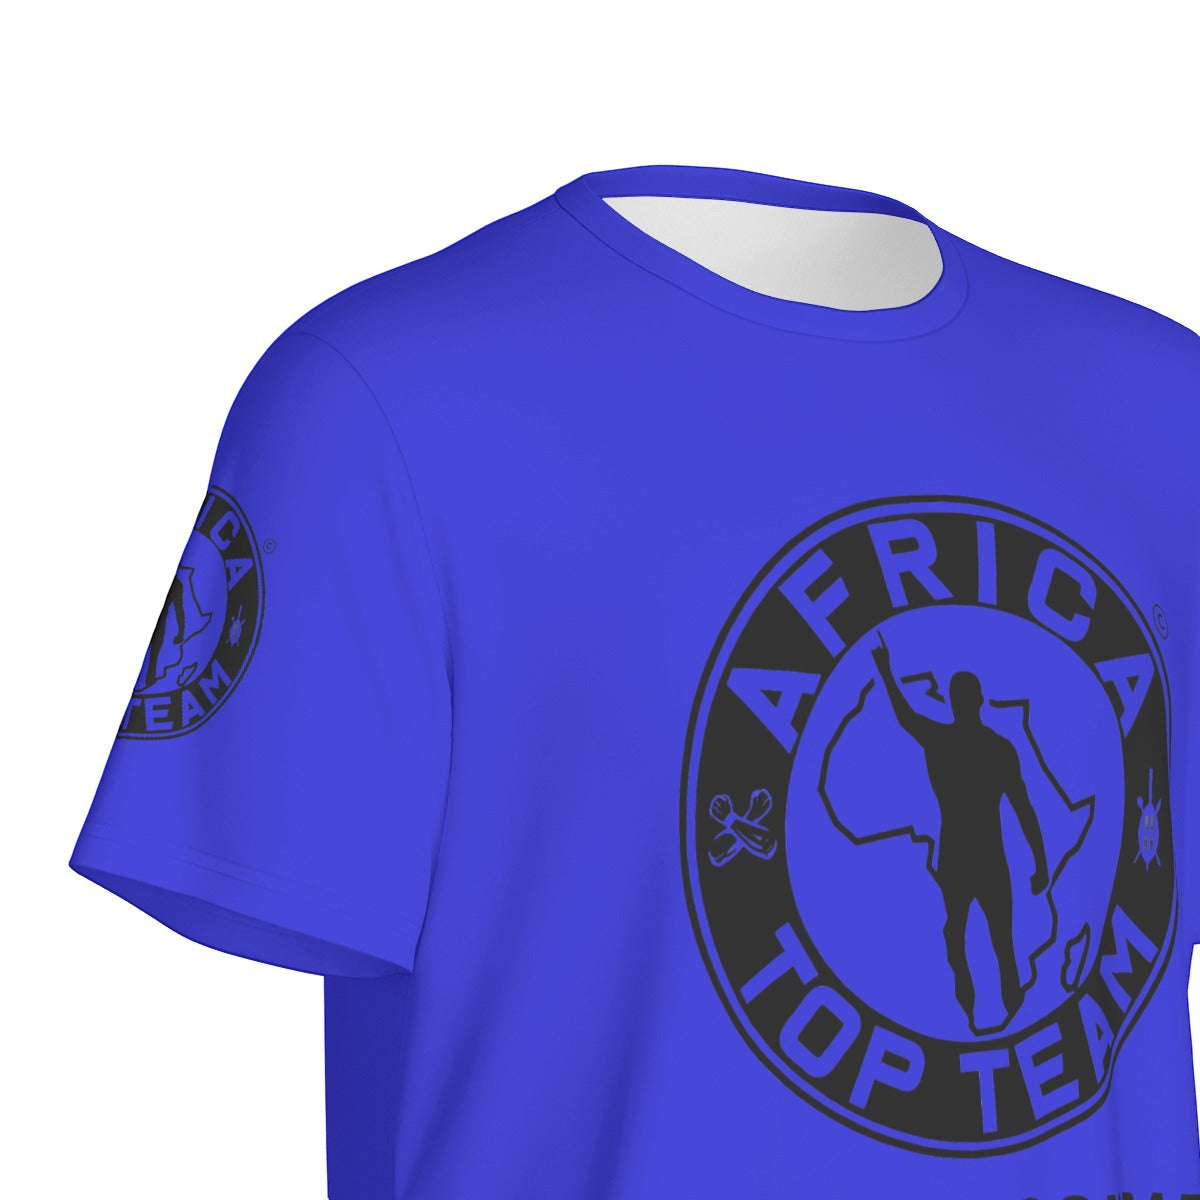 Africa Top Team Royal Blue T-Shirt